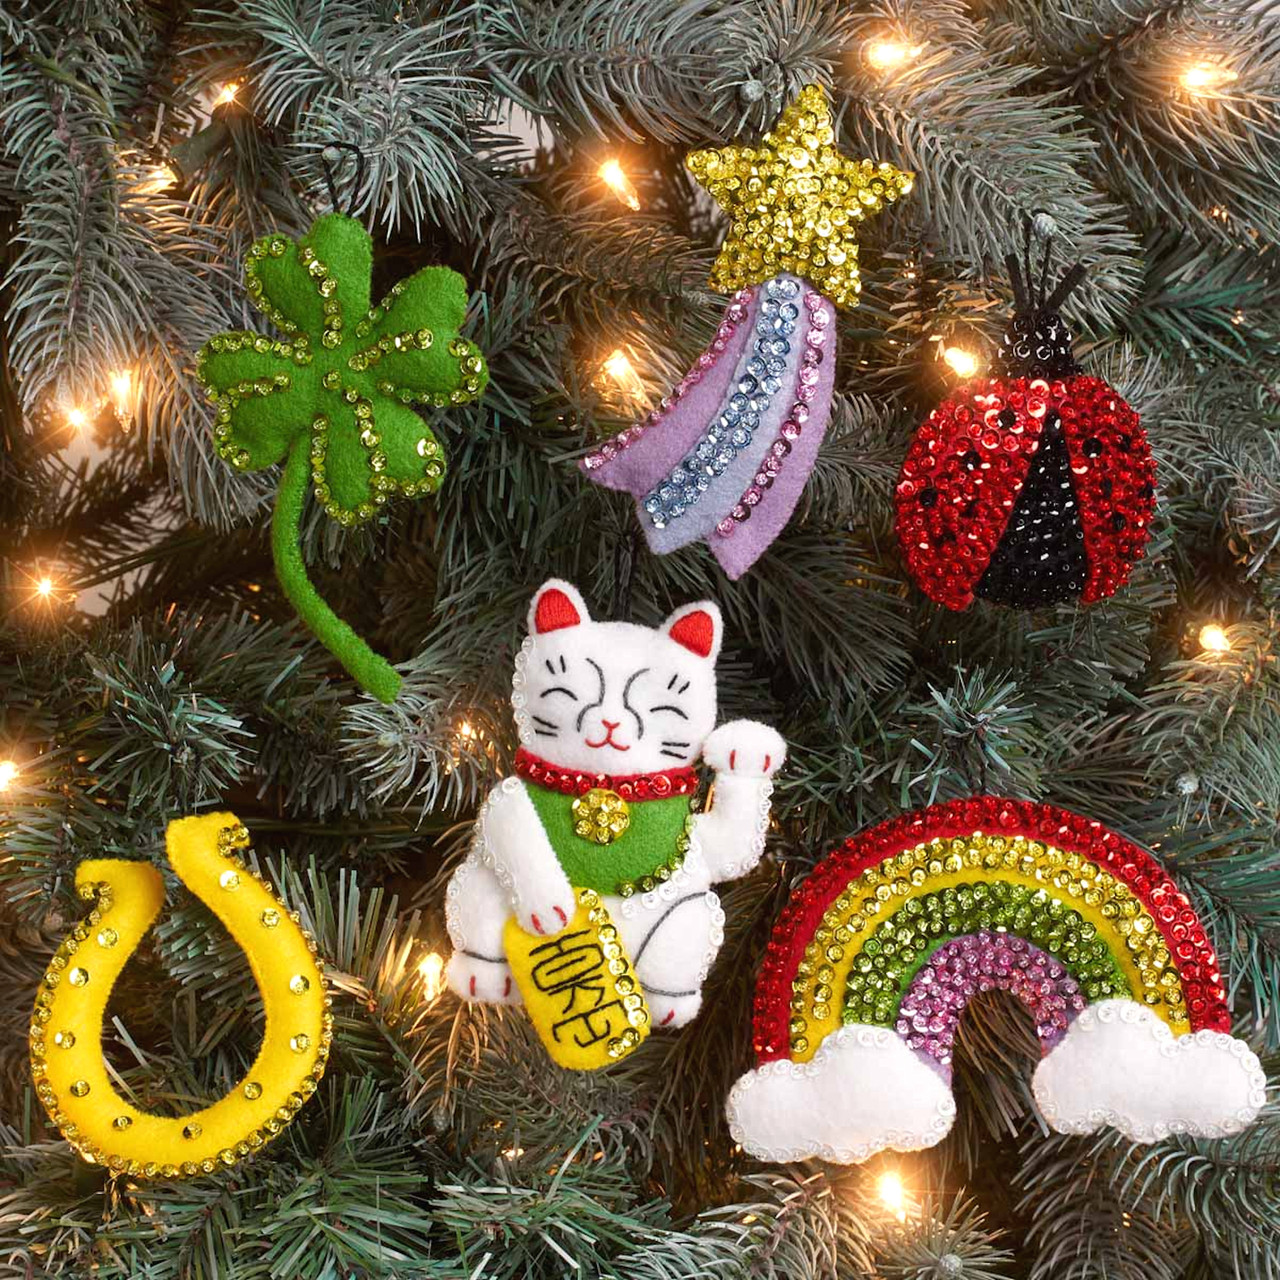 Plaid / Bucilla - Feeling Lucky Christmas Ornaments